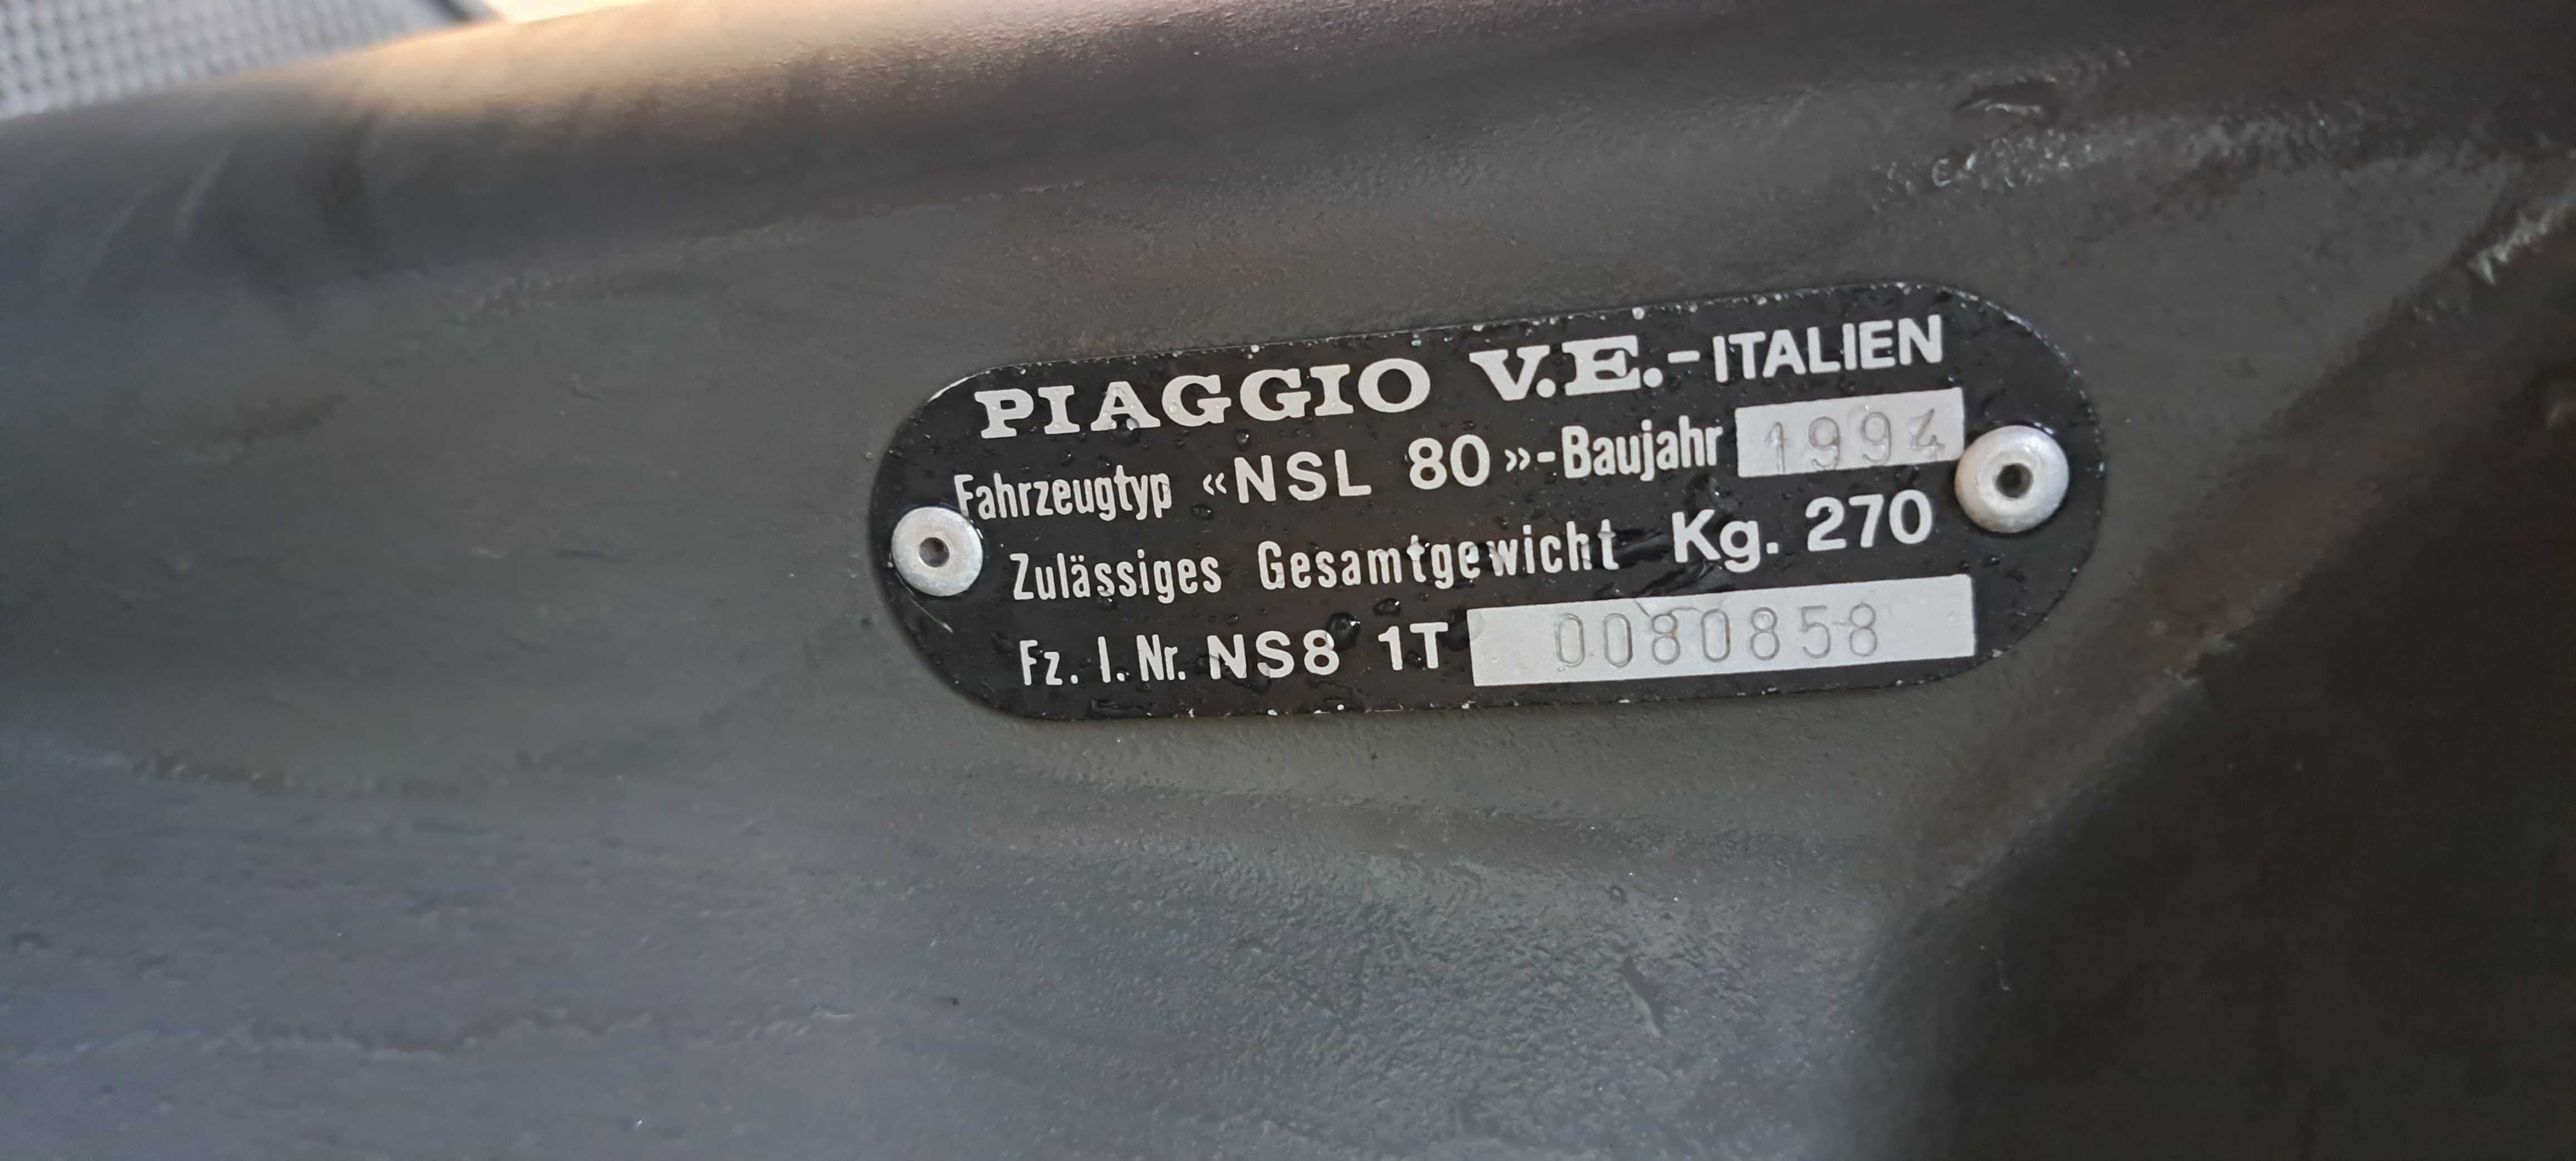 Piaggio Sfera 80cc Original / 1994 / Vintage Scooter / Import Germania